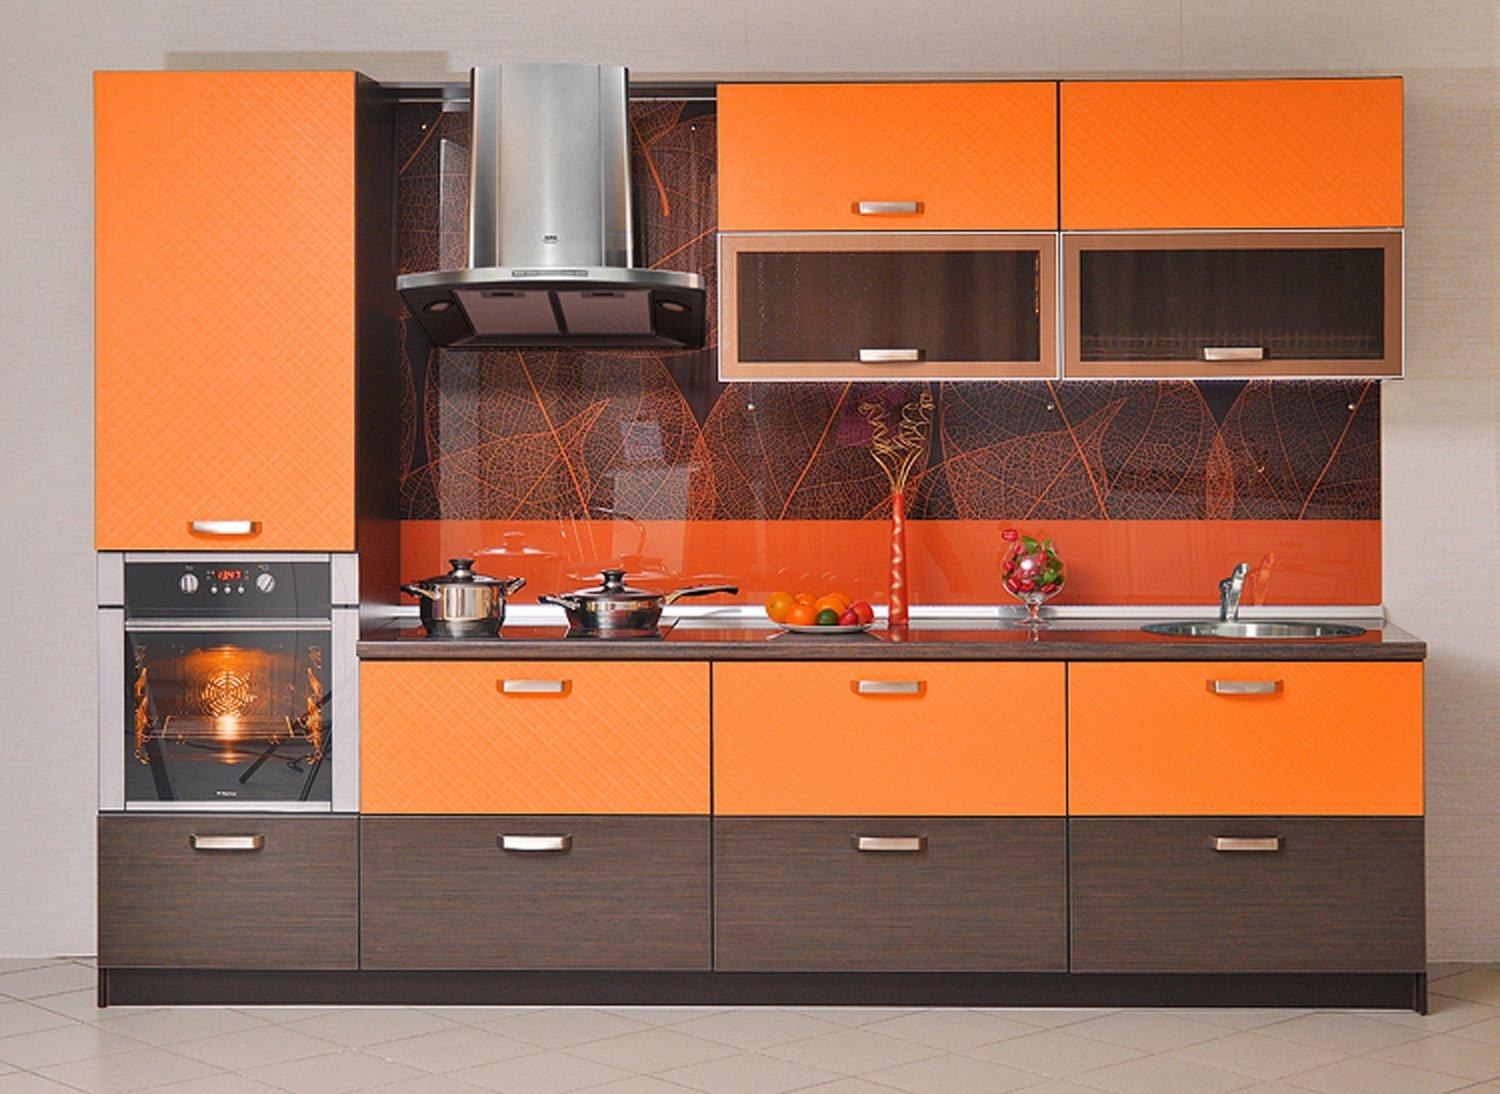 оранжевая кухня в стиле хай тек